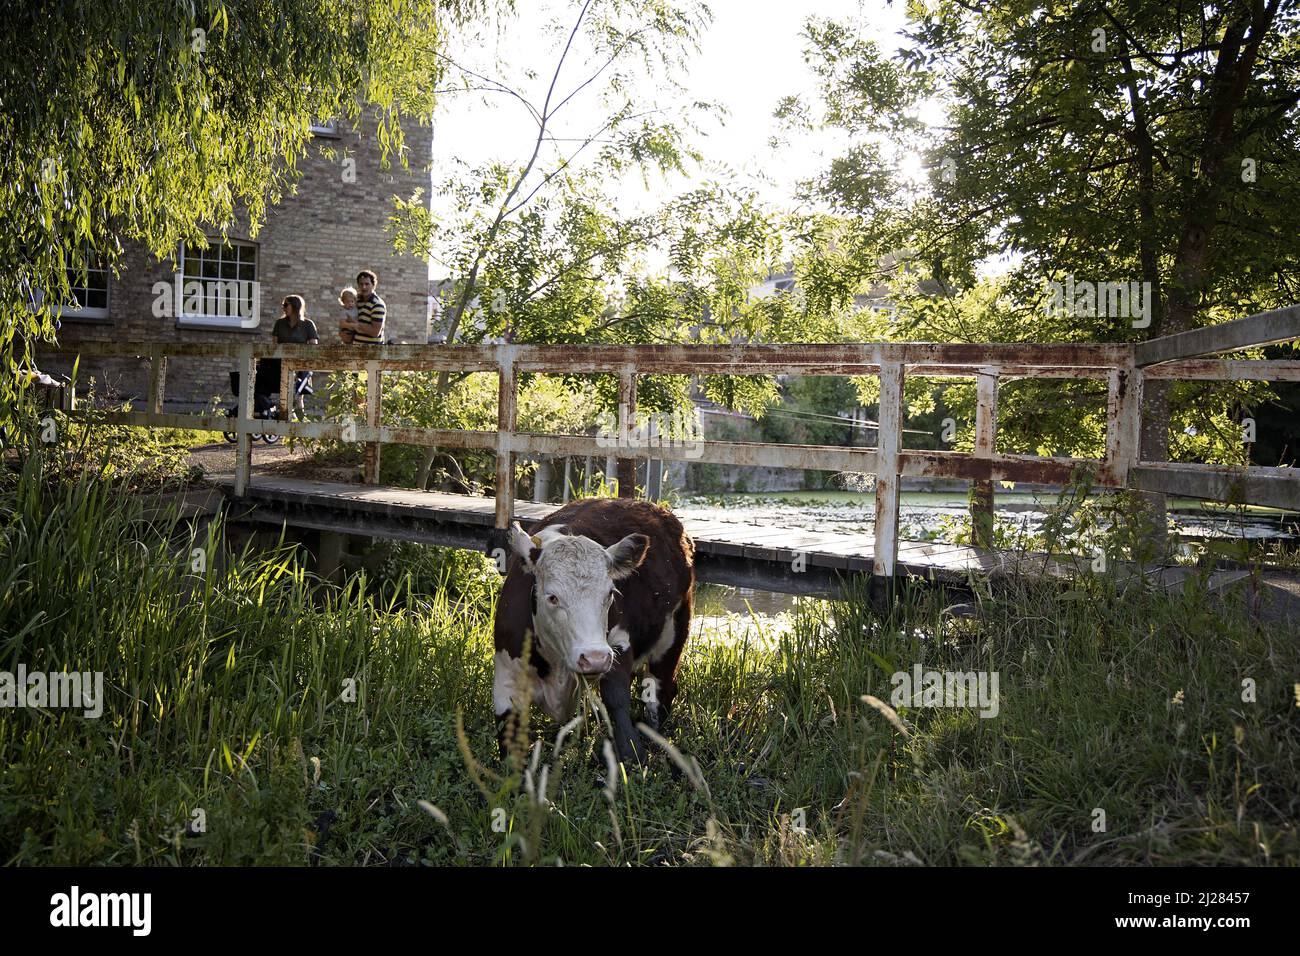 Cambridge è famosa per le sue mucche che camminano liberamente nei parchi e nei prati della città. Fanno parte del paesaggio della città e del fascino della città. Foto Stock